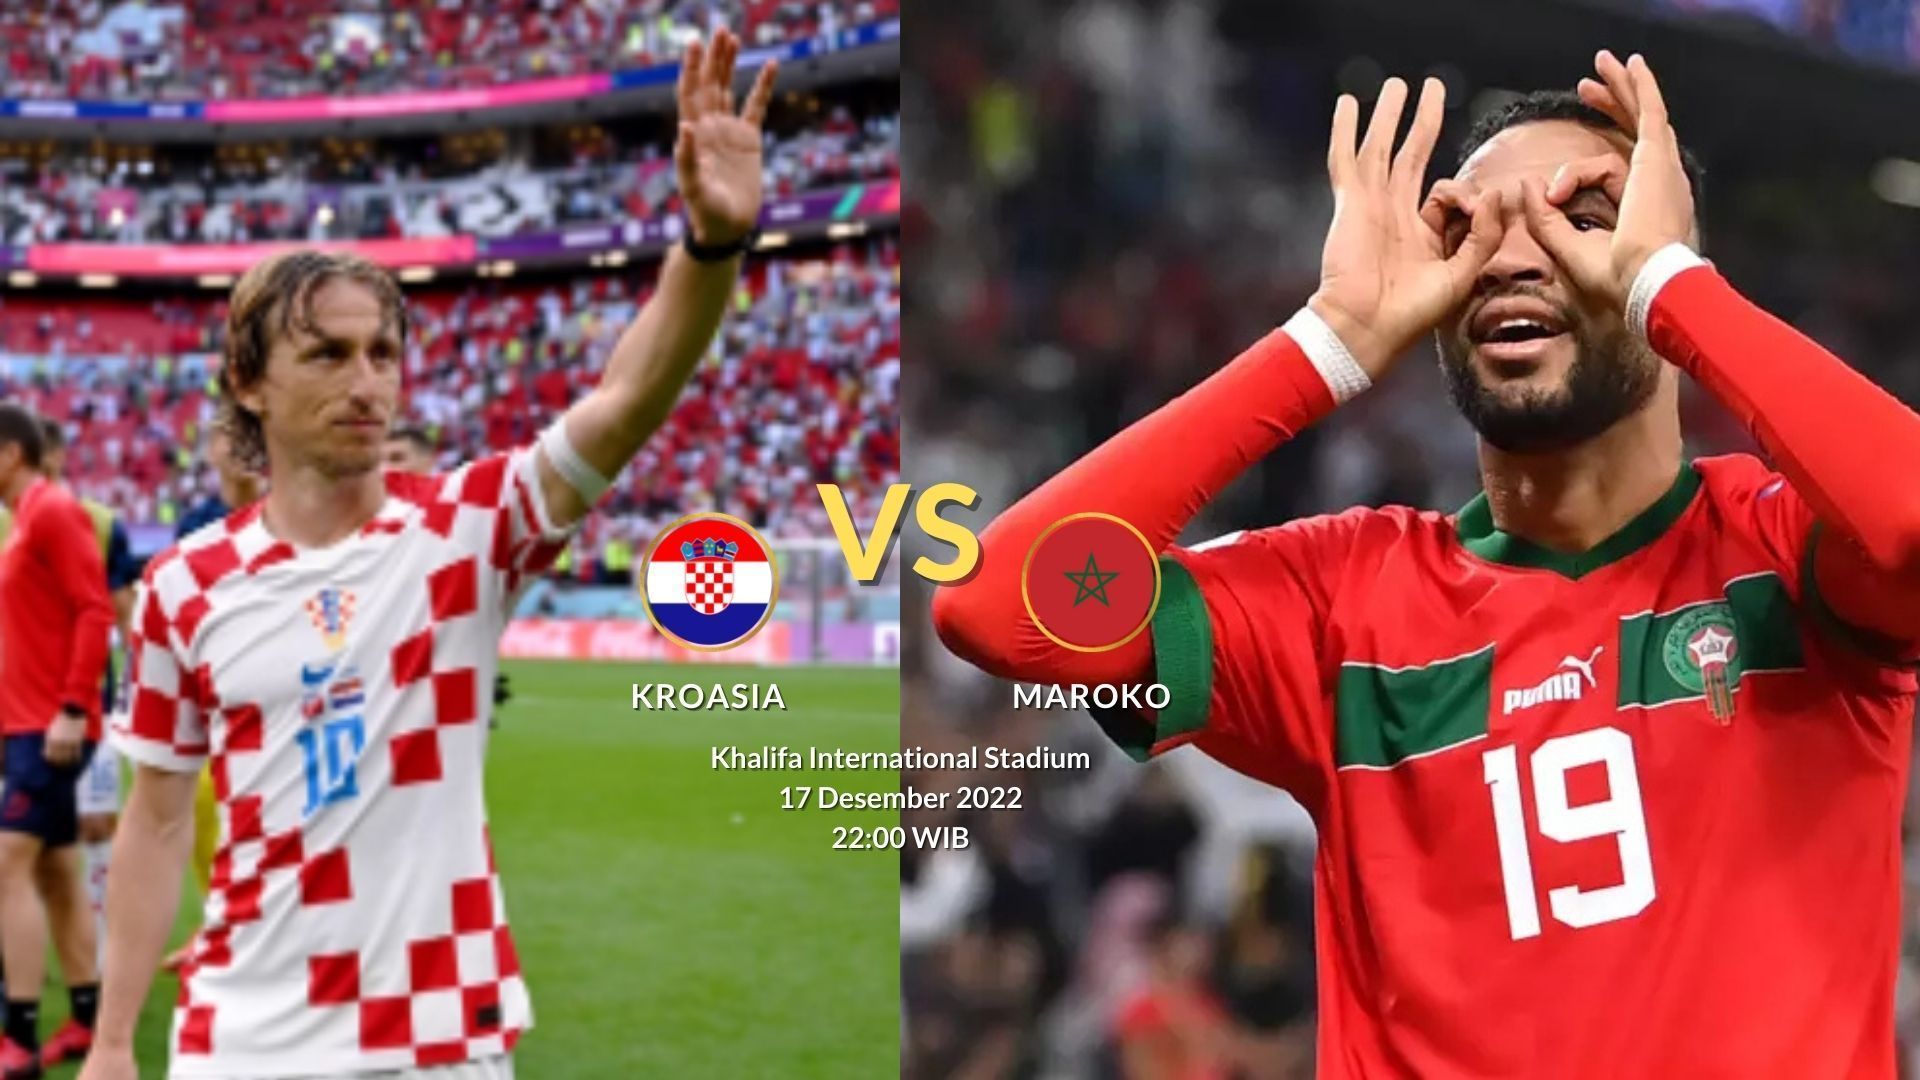 LINK Nonton Siaran Langsung Kroasia vs Maroko Perebutan Juara 3 Piala Dunia 2022, Klik di Sini